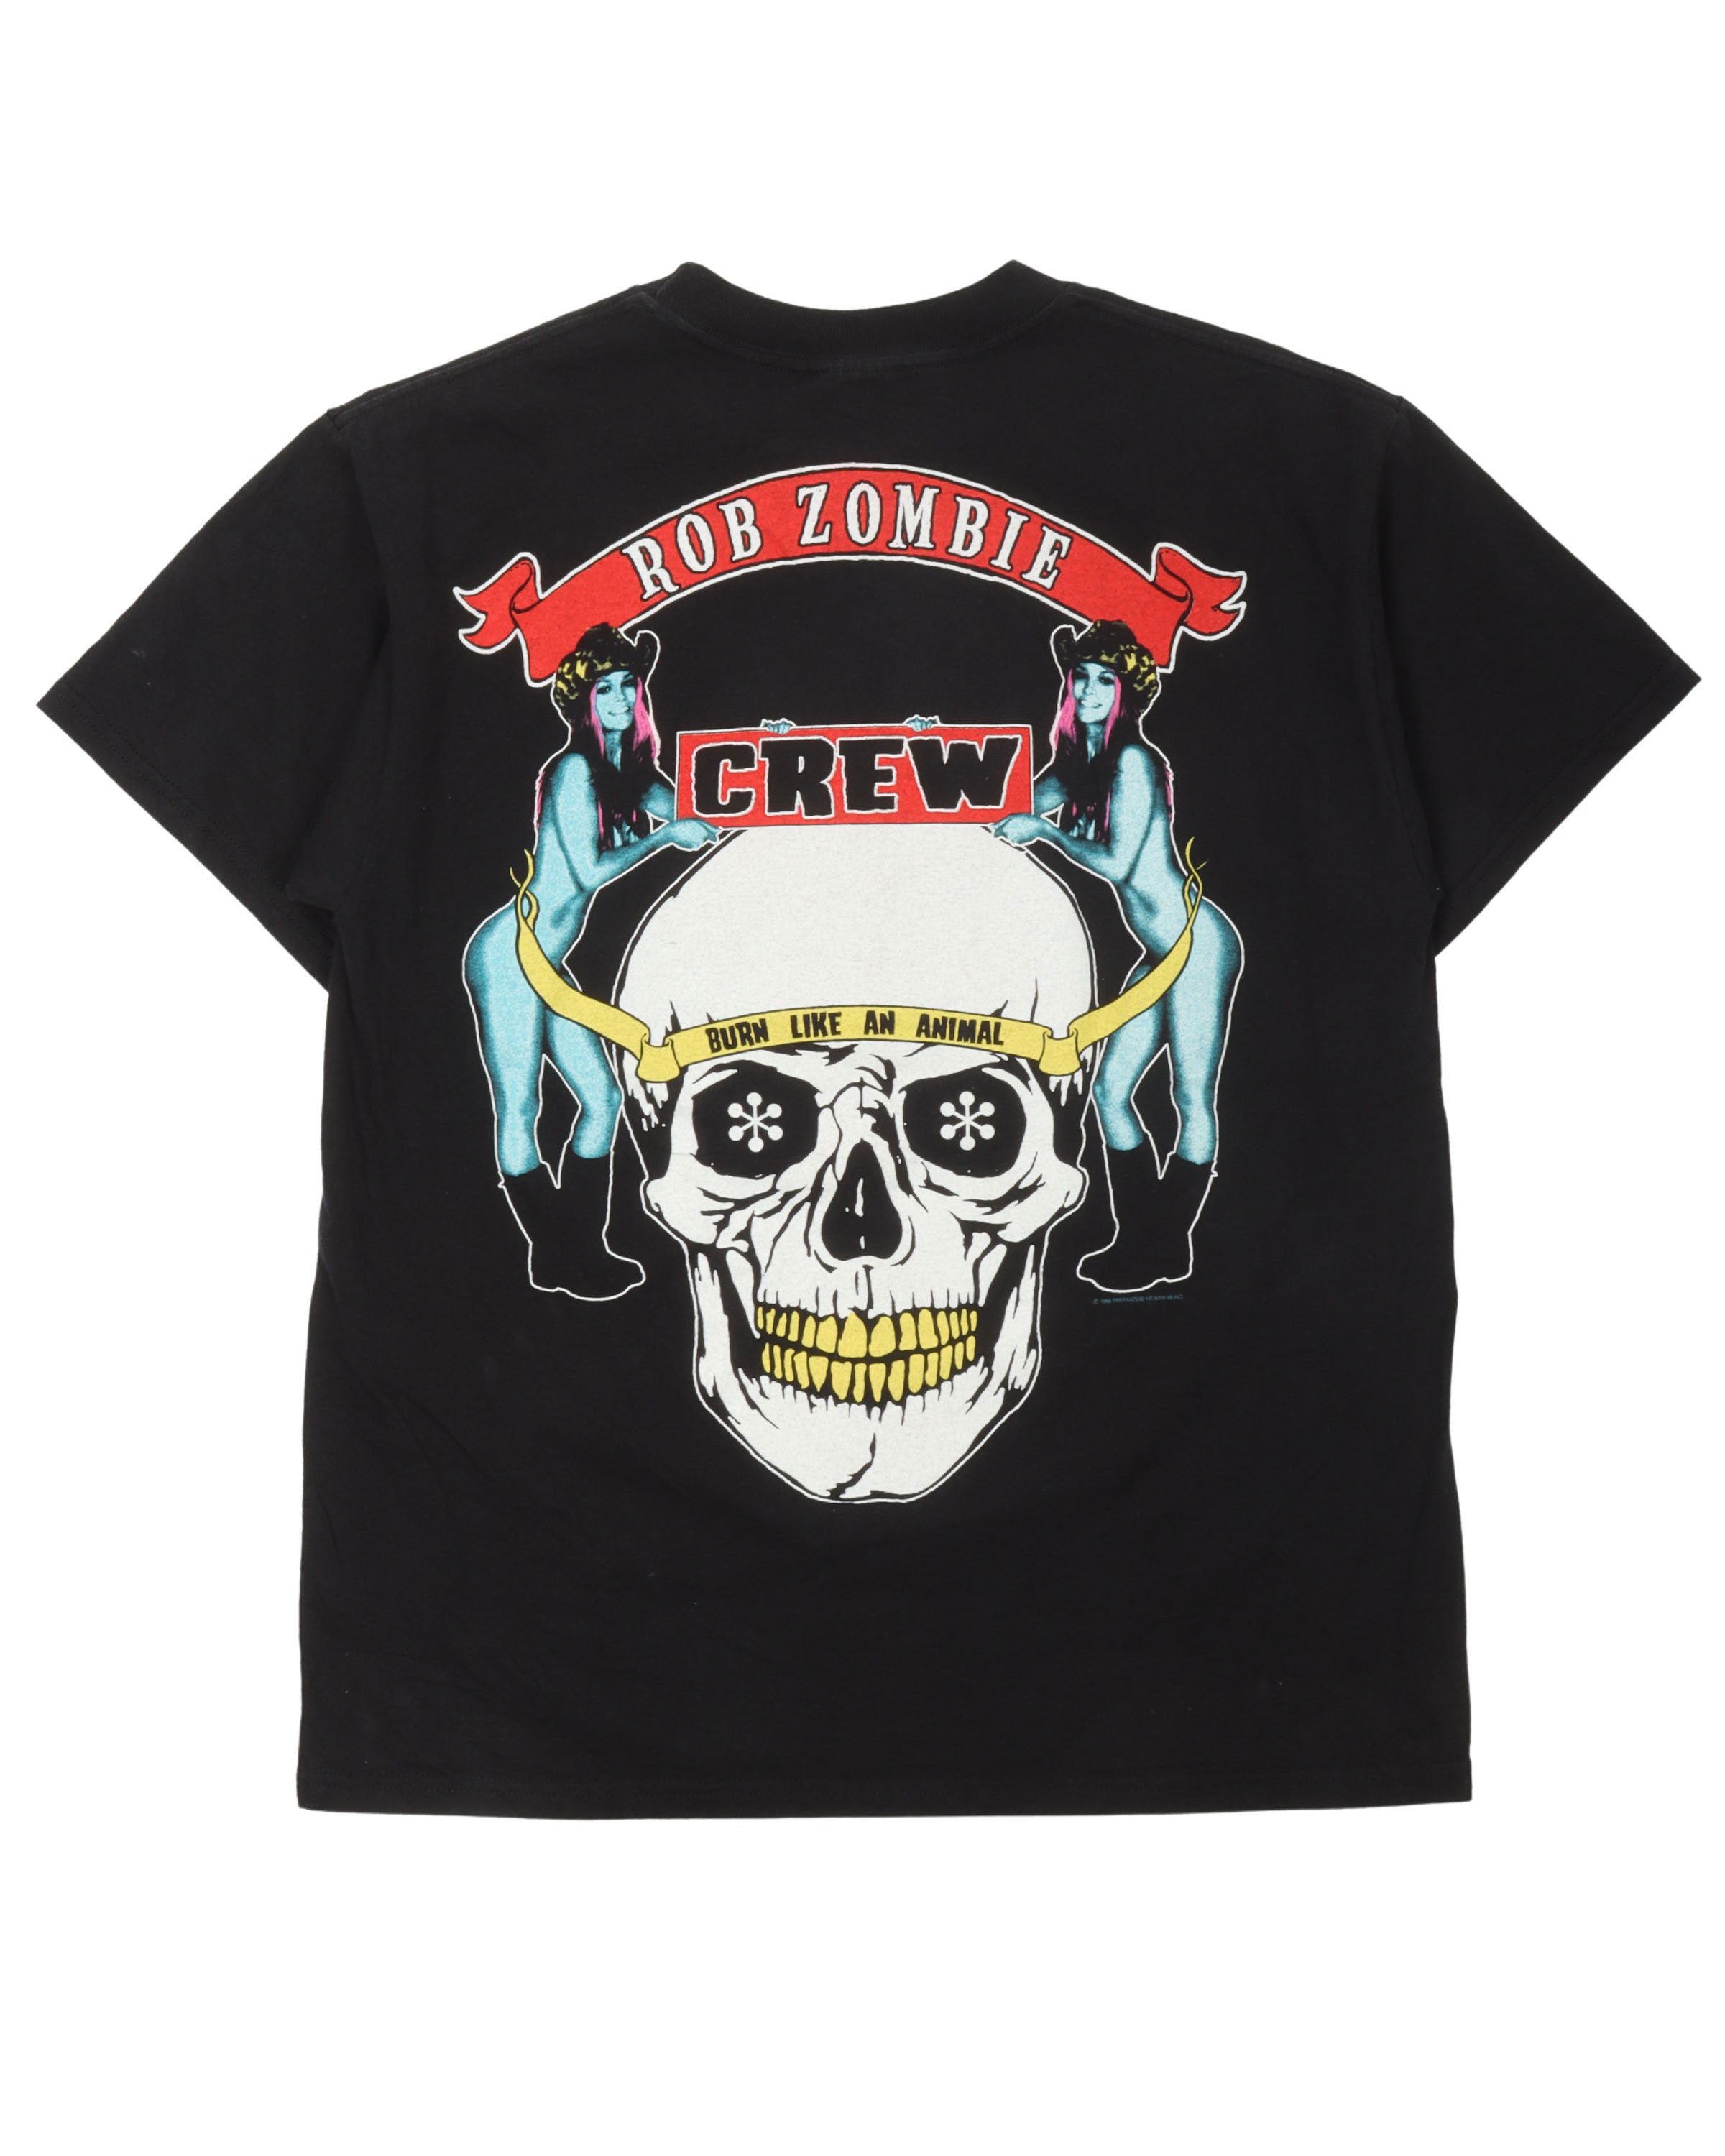 Rob Zombie Dragula T-Shirt